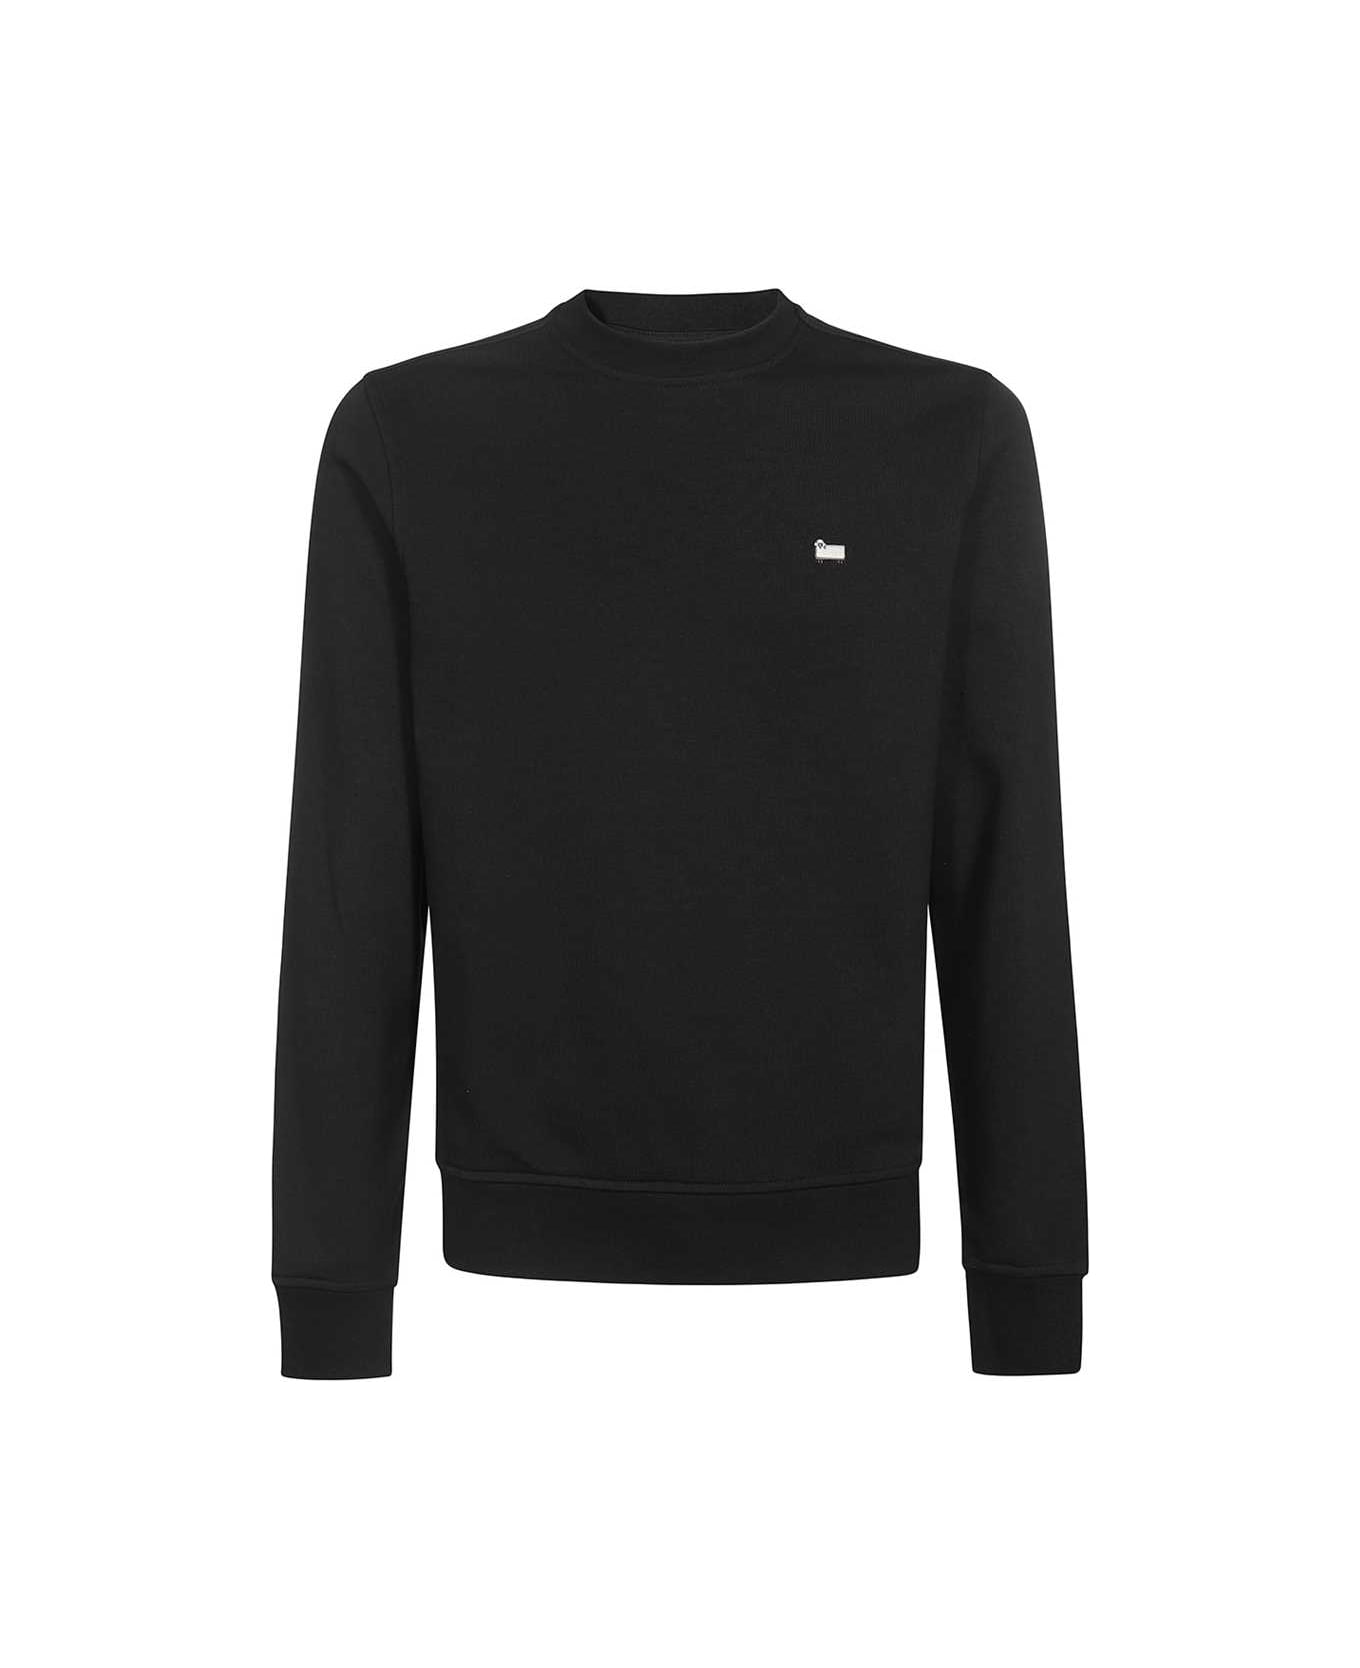 Woolrich Embroidered Logo Crew-neck Sweatshirt - black